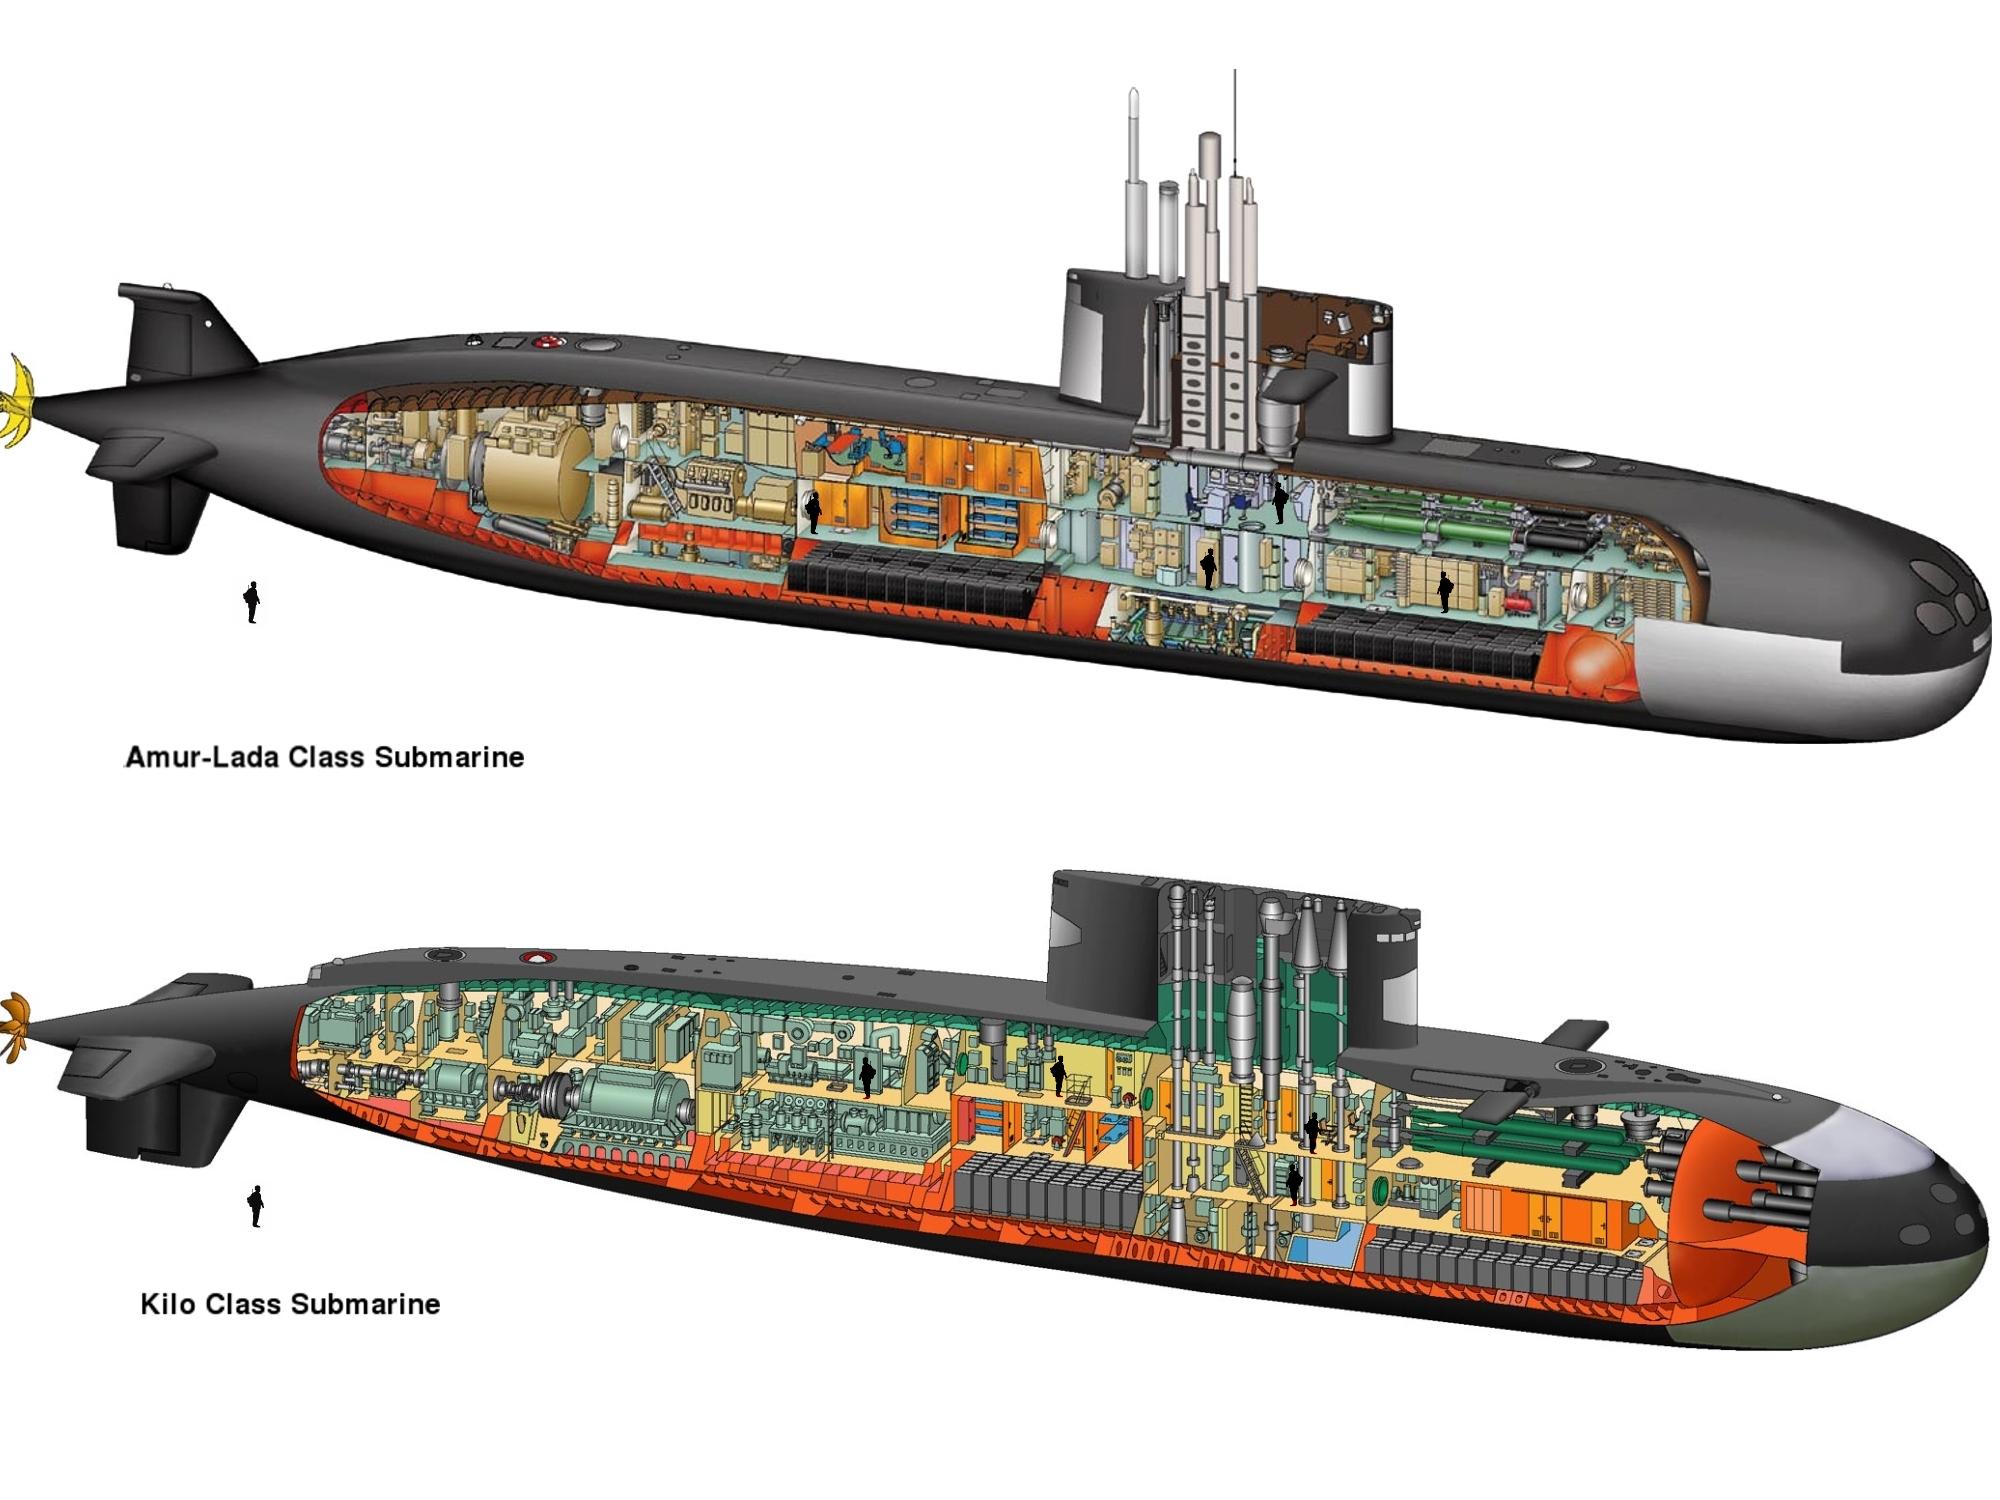 [模型网官方评测]梦模型1/700 俄罗斯677拉达级常规潜艇(dm70004)版件